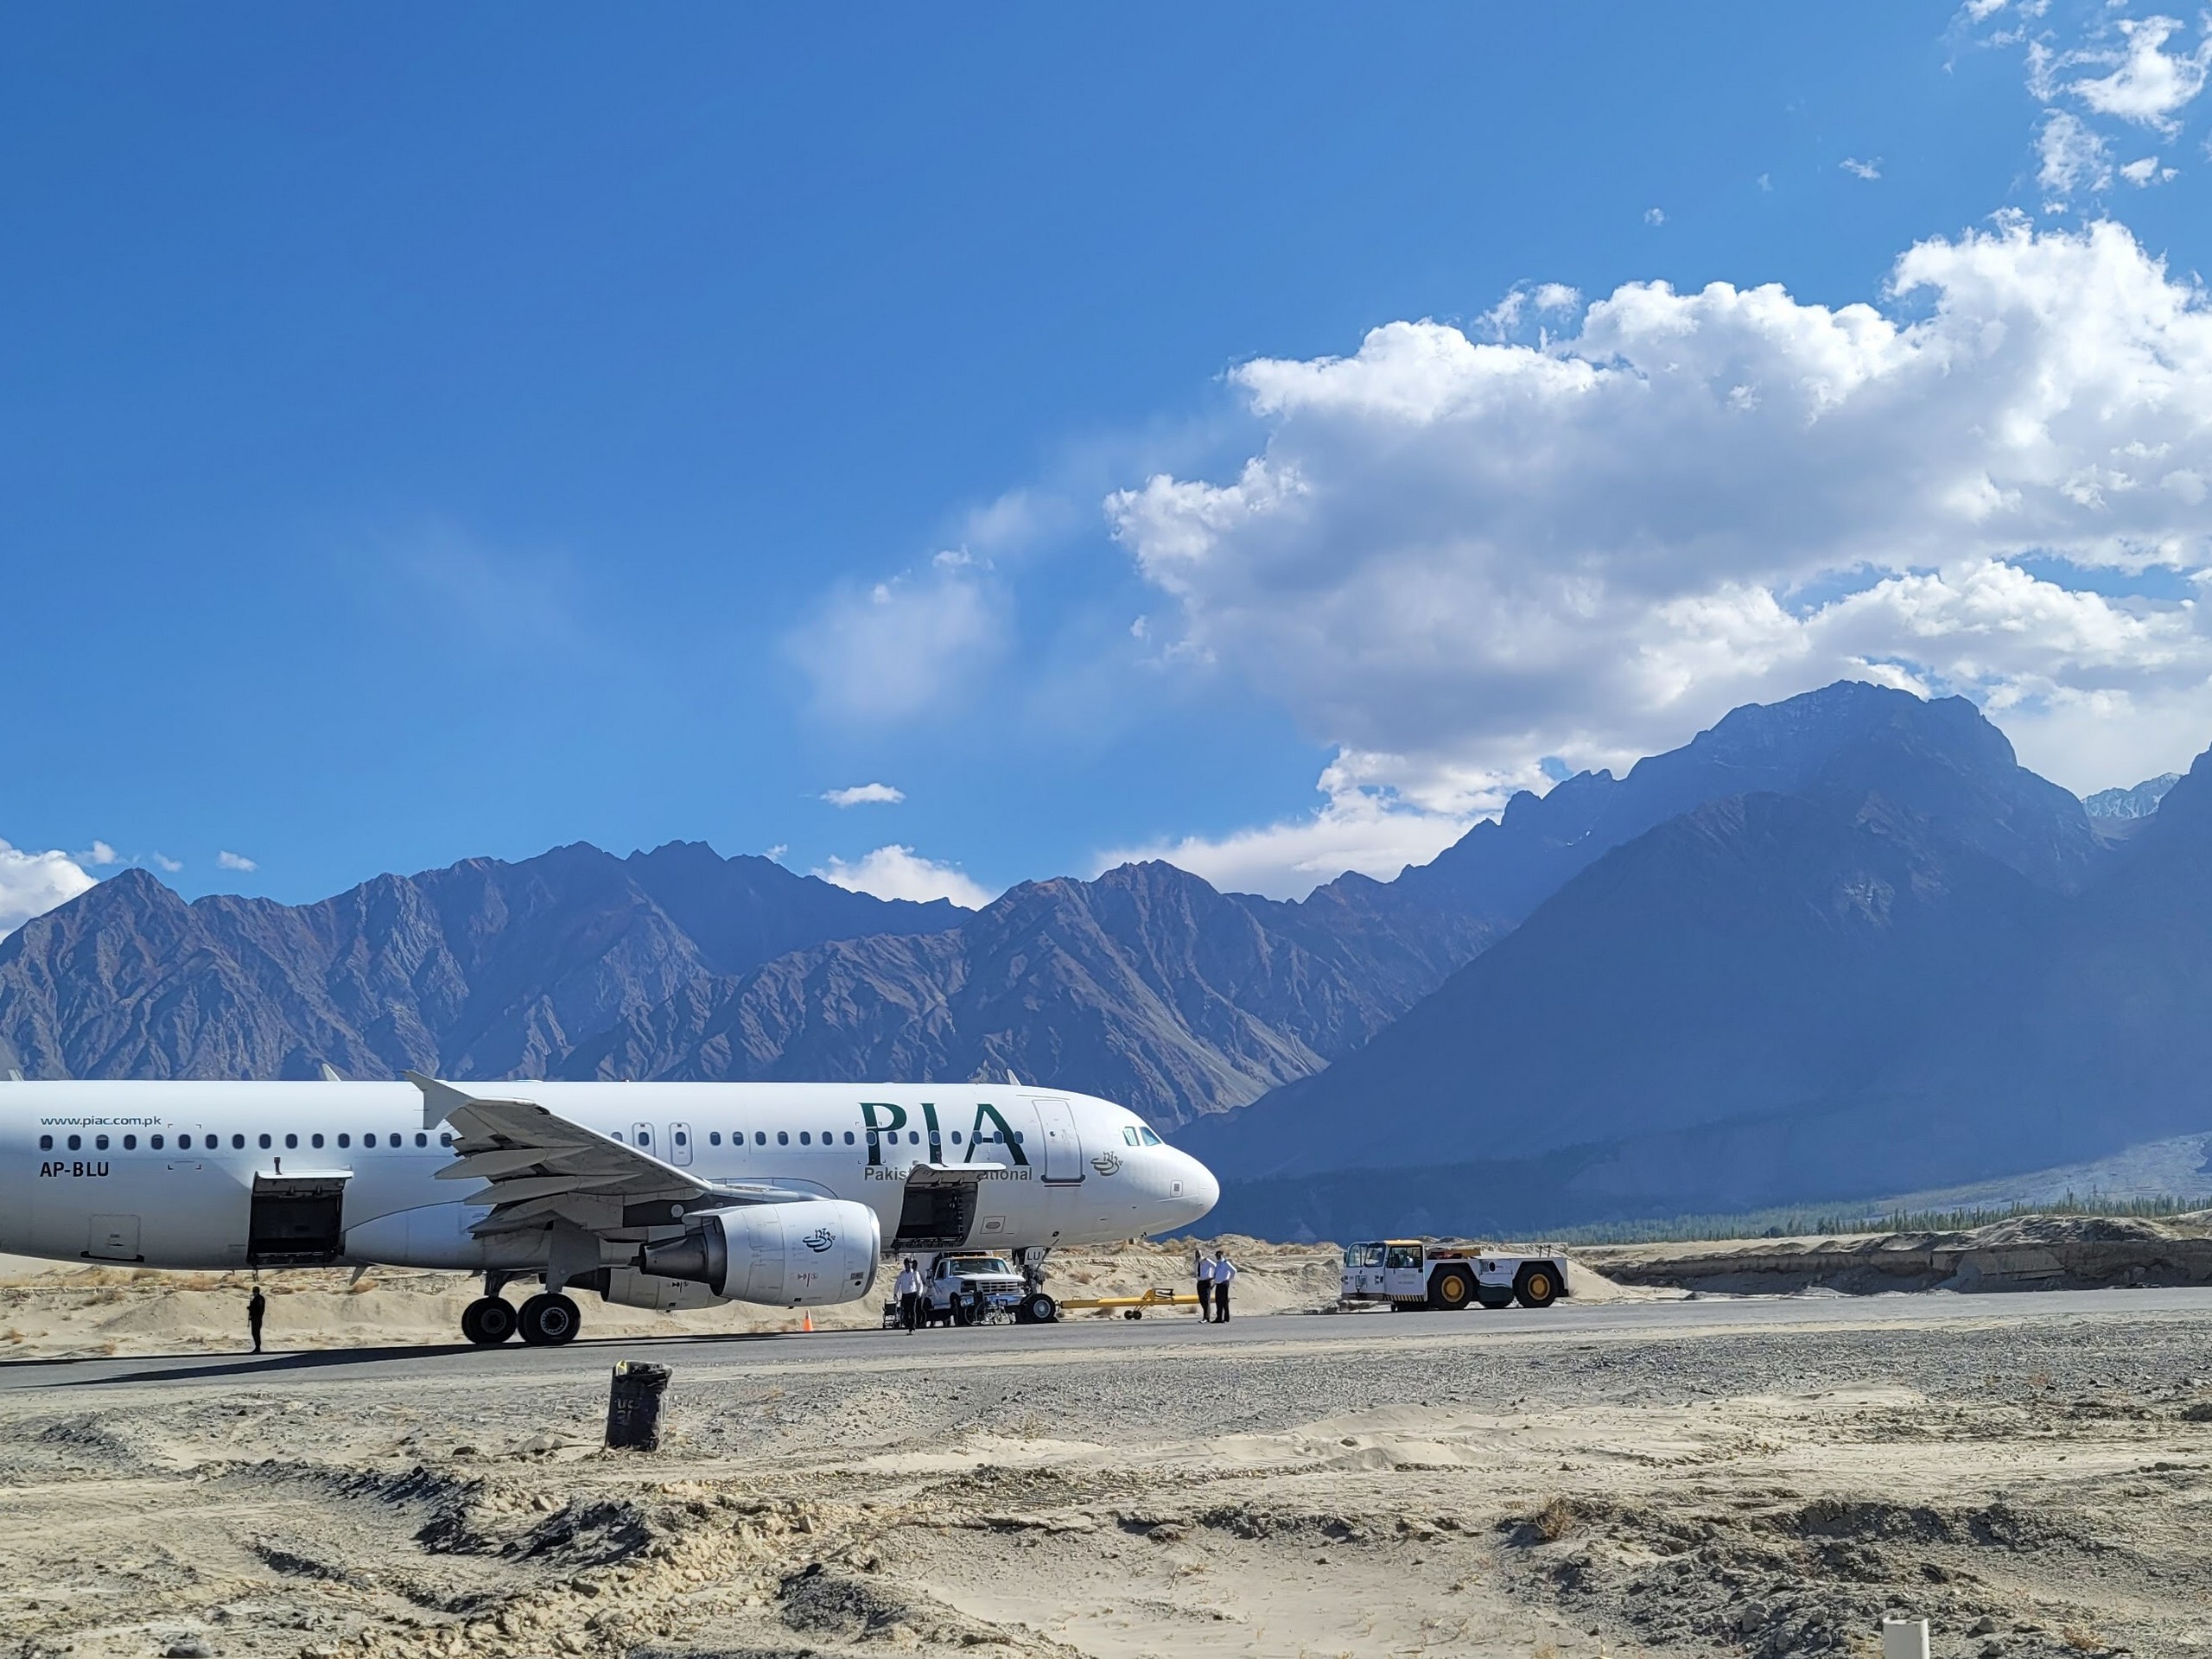 Skardu Airport, gateway to North Pakistan